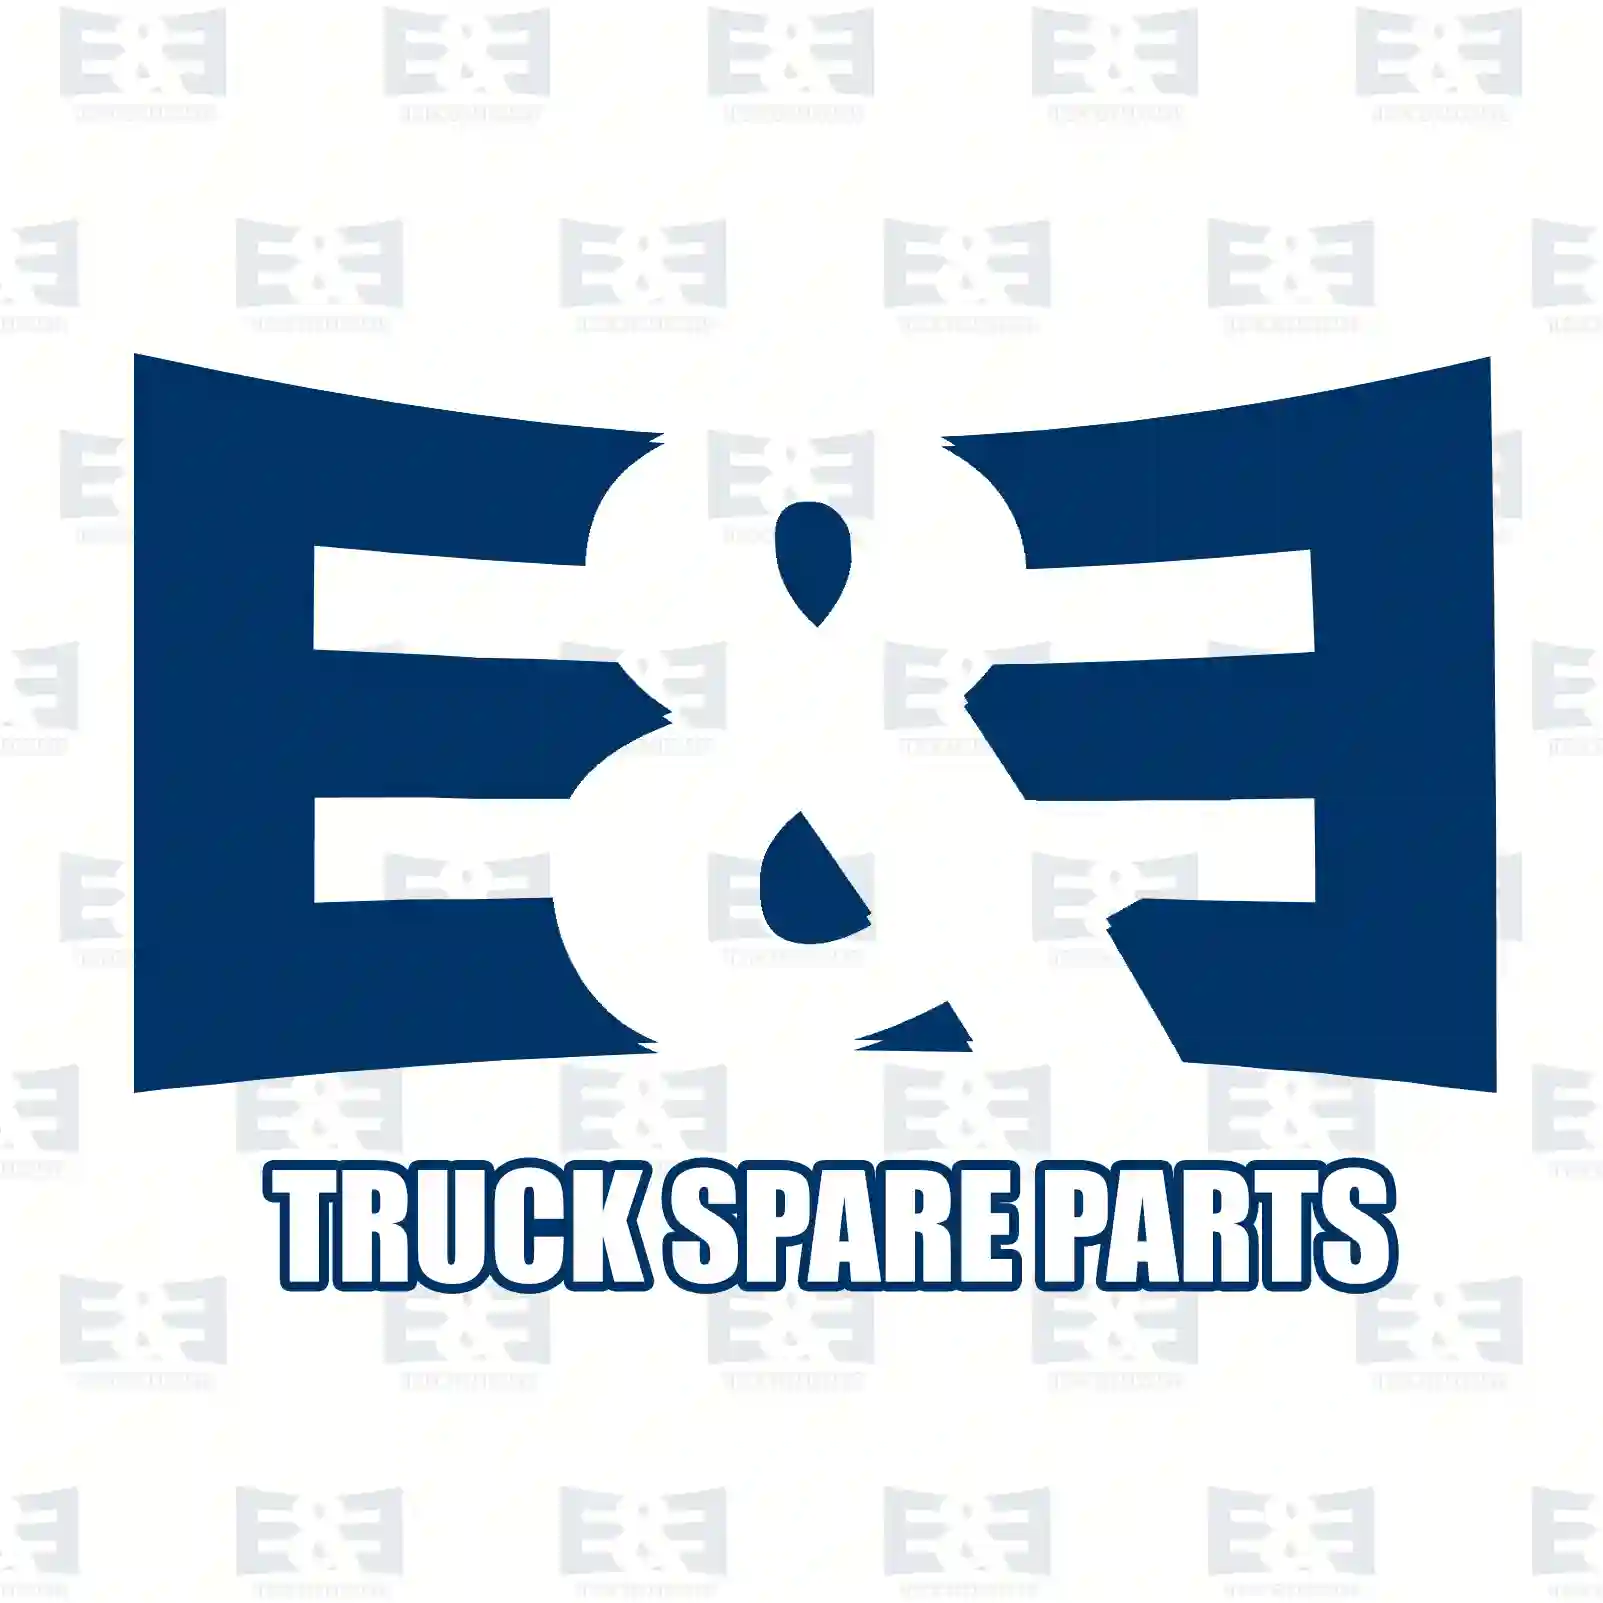 Oil cooler, gearbox, 2E2277320, 1351657, 1375766, 1395673 ||  2E2277320 E&E Truck Spare Parts | Truck Spare Parts, Auotomotive Spare Parts Oil cooler, gearbox, 2E2277320, 1351657, 1375766, 1395673 ||  2E2277320 E&E Truck Spare Parts | Truck Spare Parts, Auotomotive Spare Parts